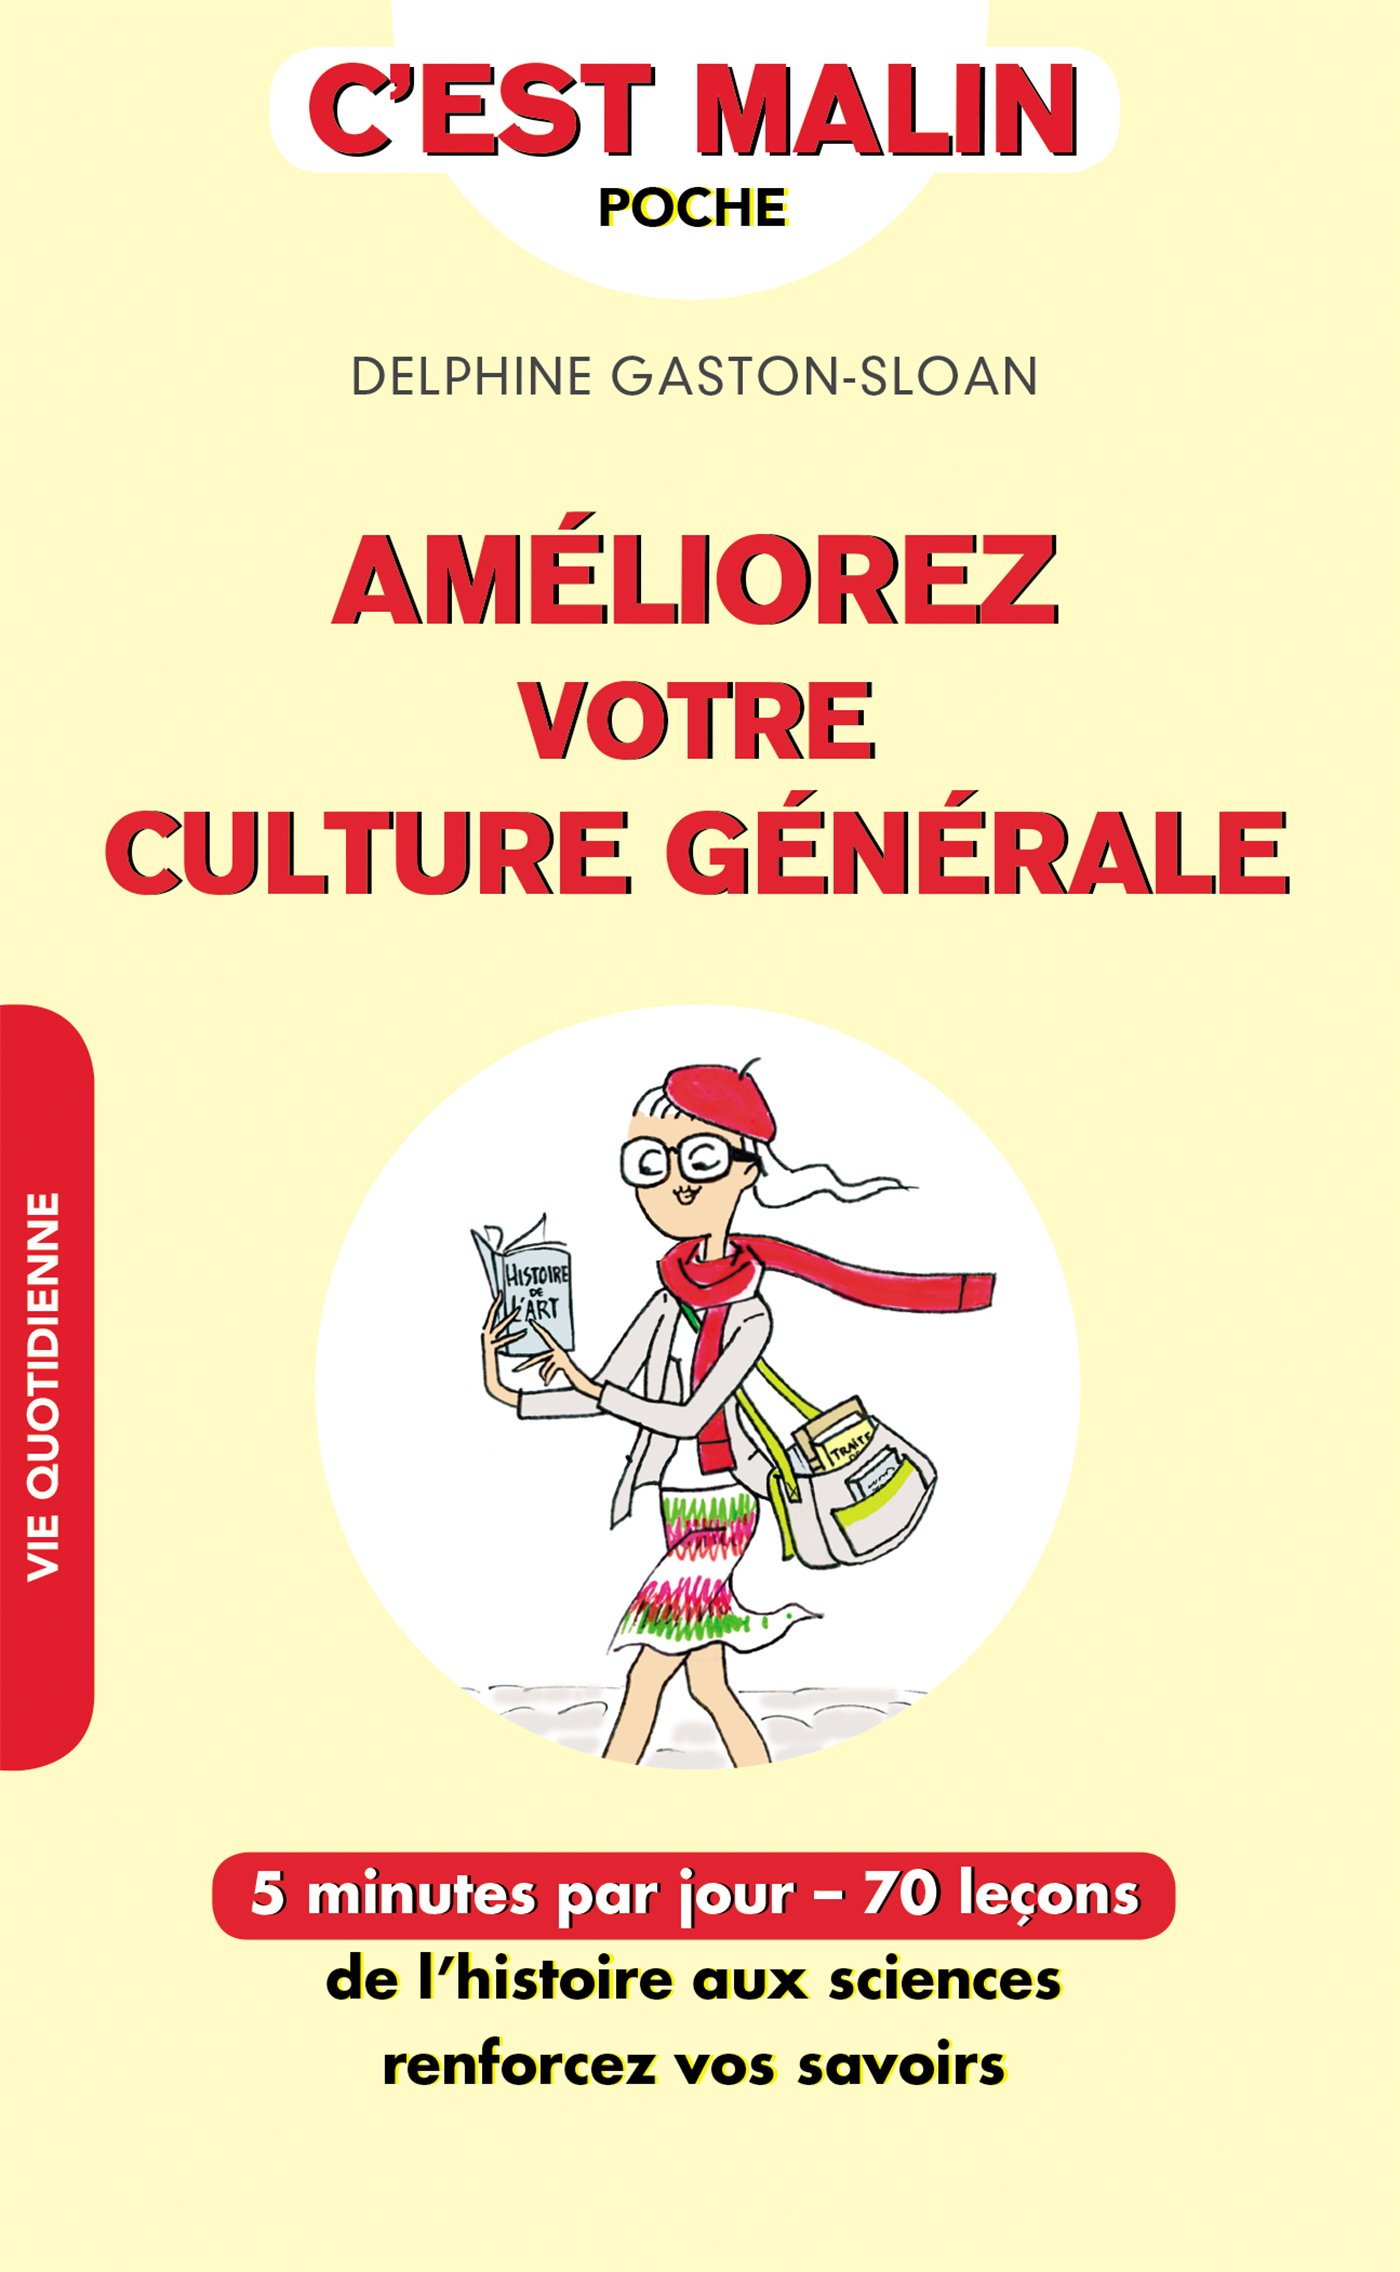 Culture générale: Mon livre de référence